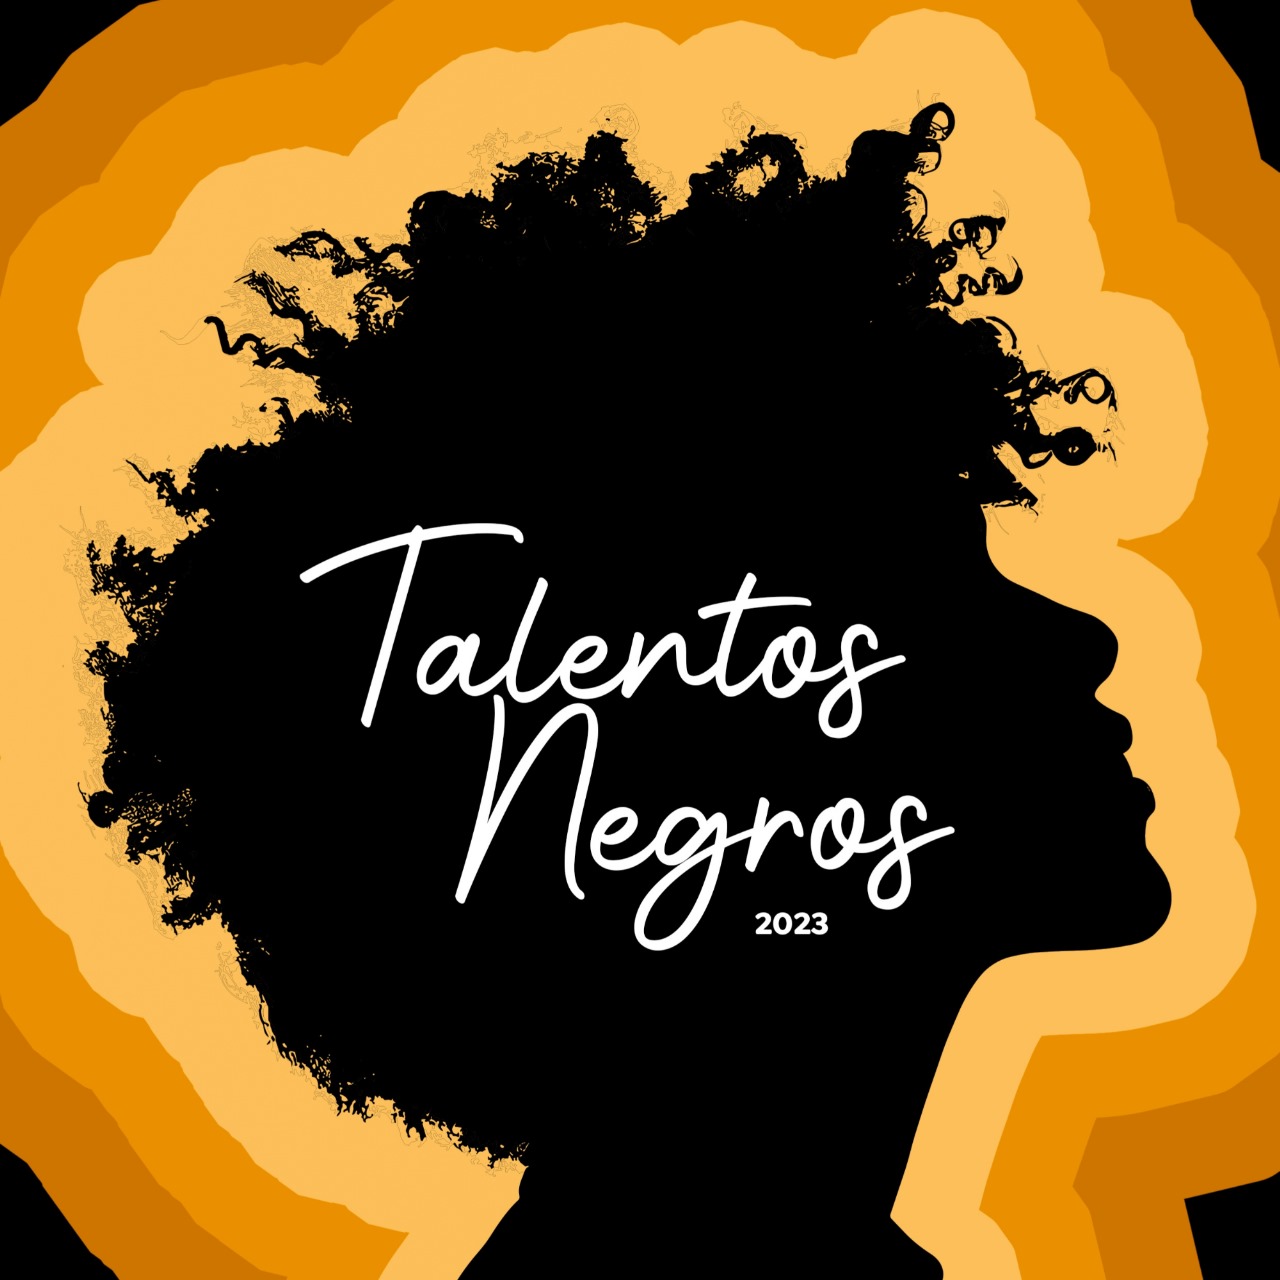 Talentos Negros: projeto oferece oportunidade para profissionais negros